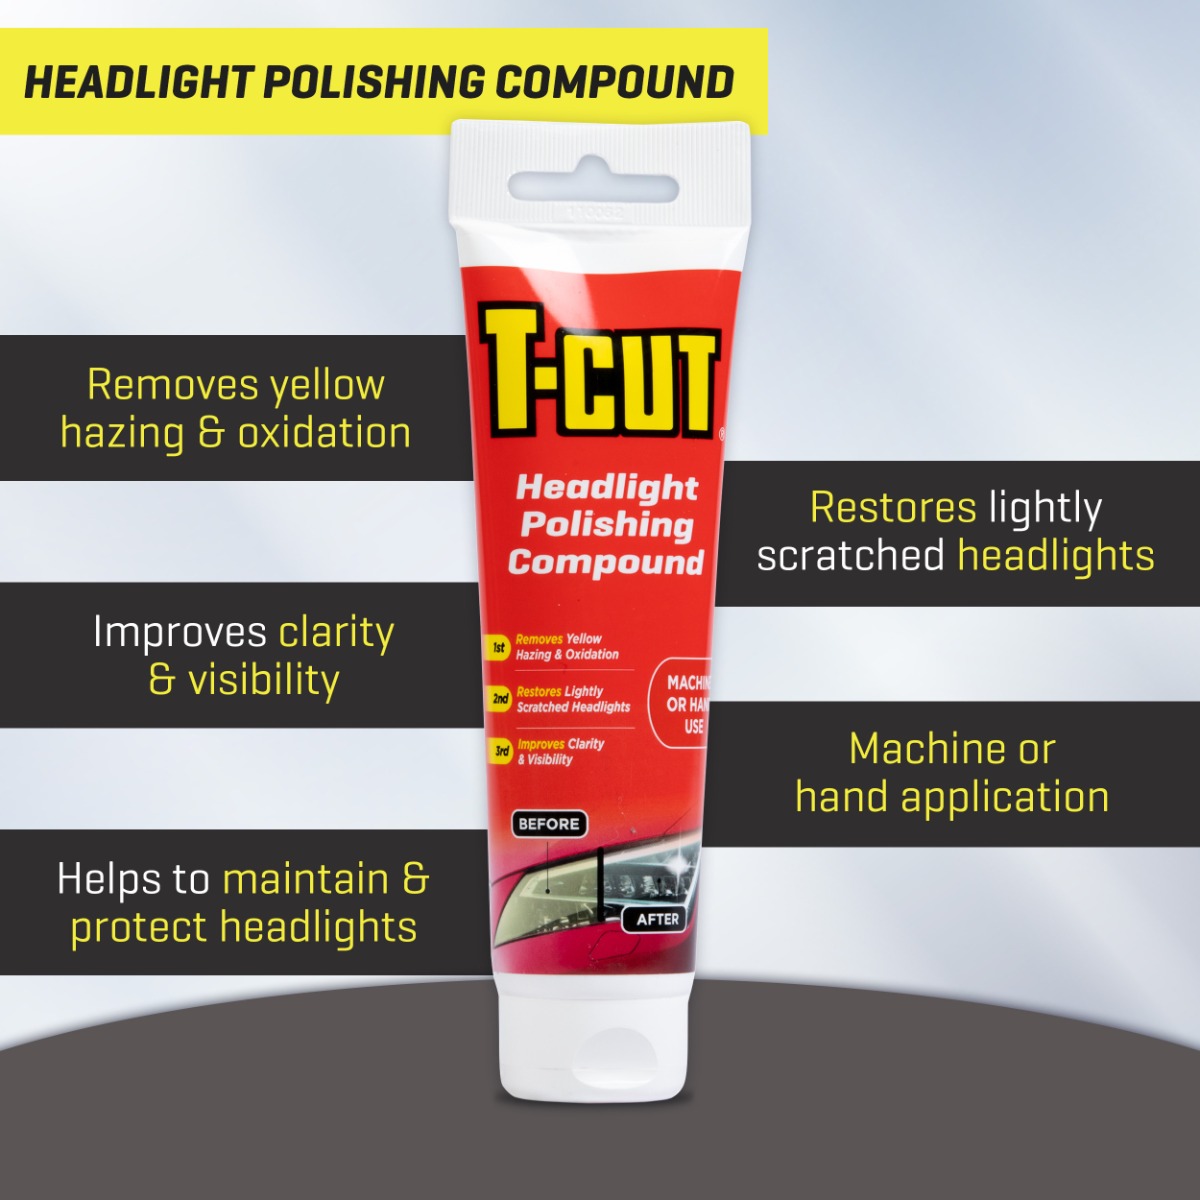 Benefits of T-cut Headlight Polishing Compound